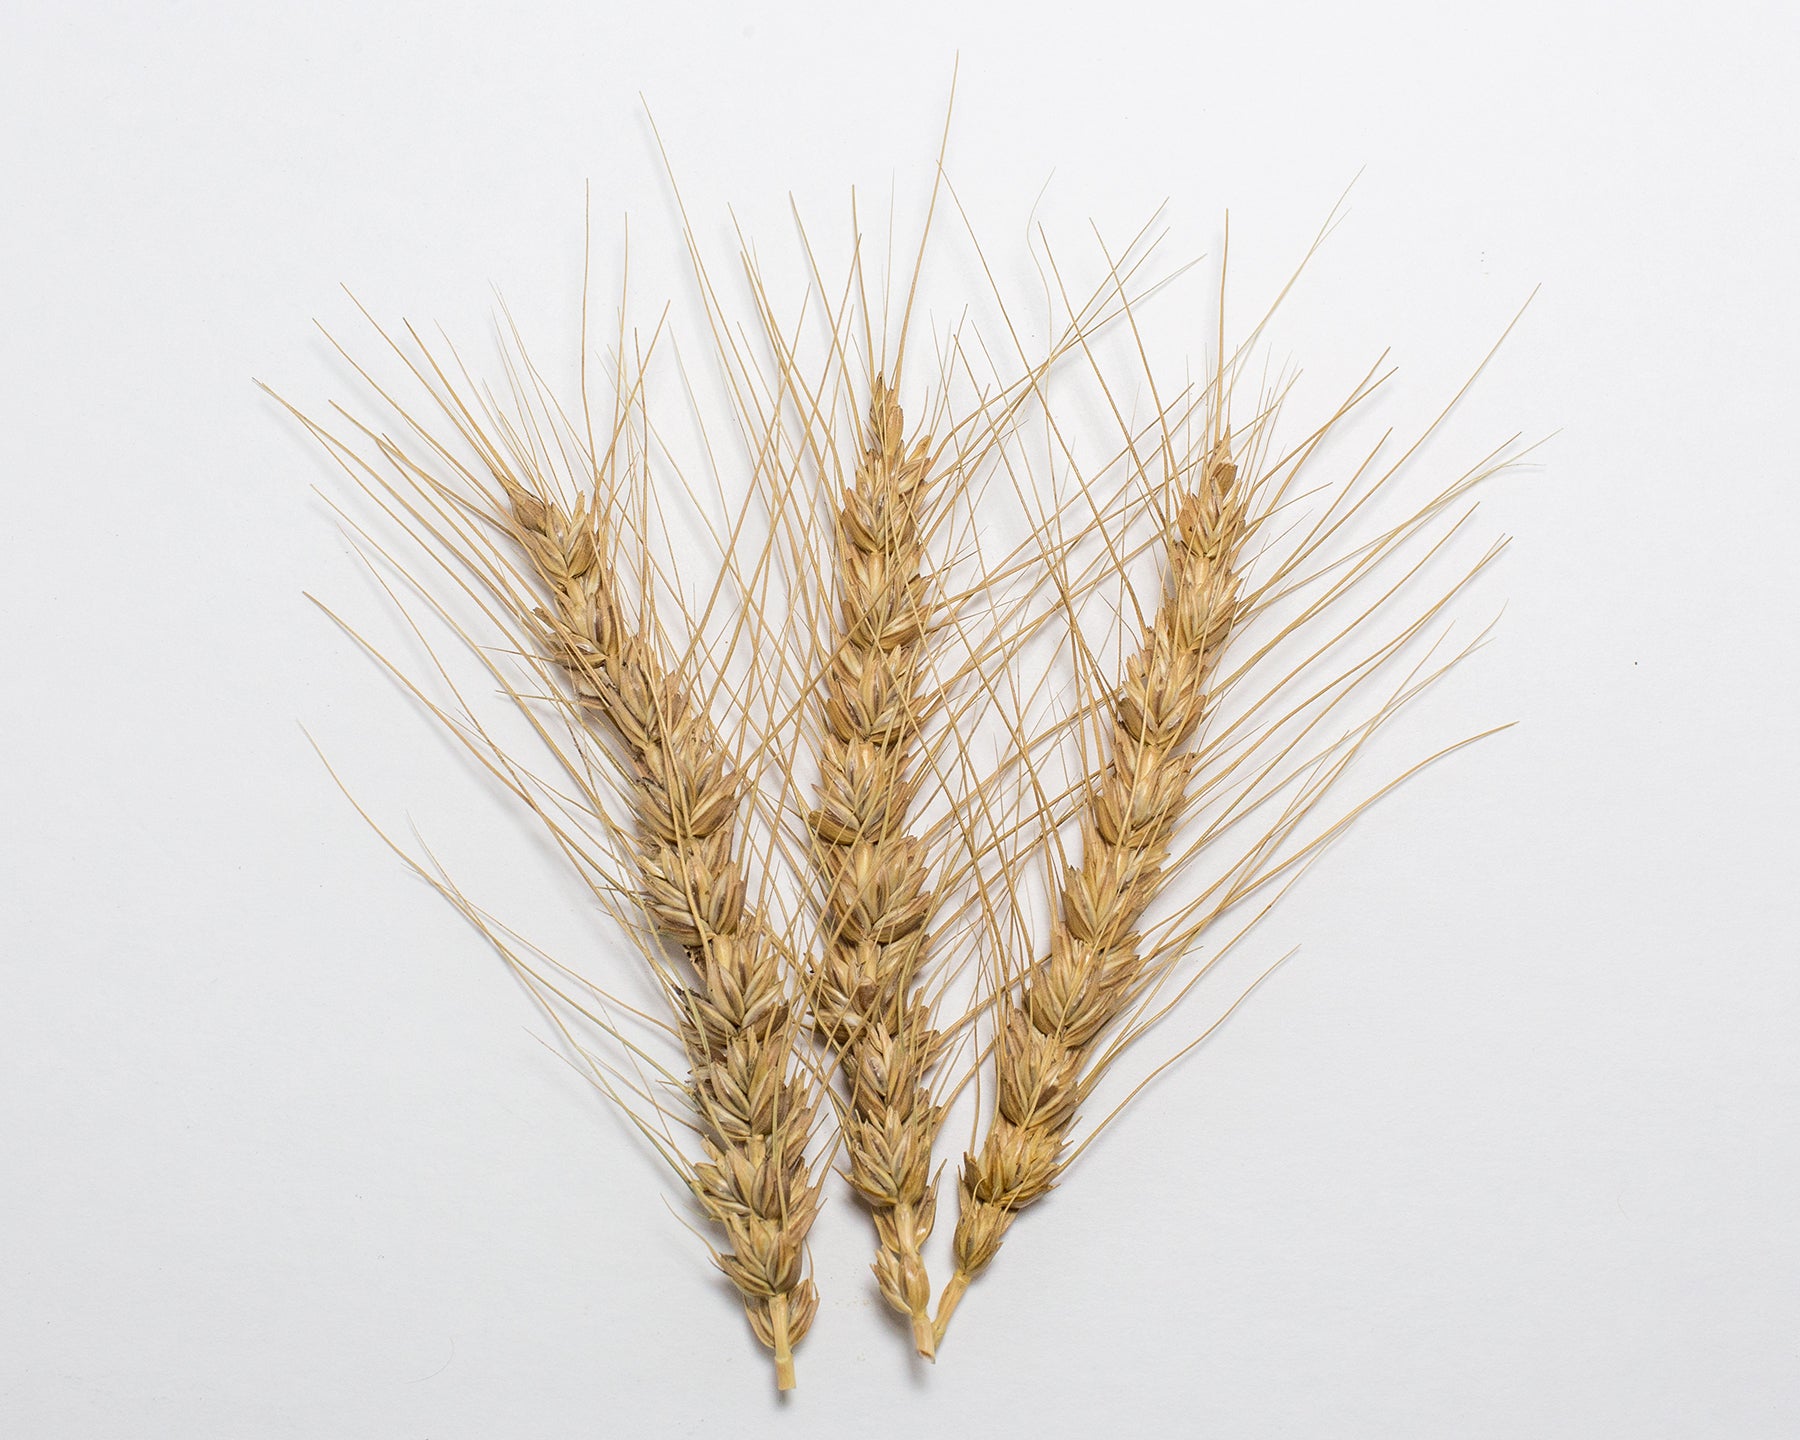 Wheat (Bread) - Ladoga